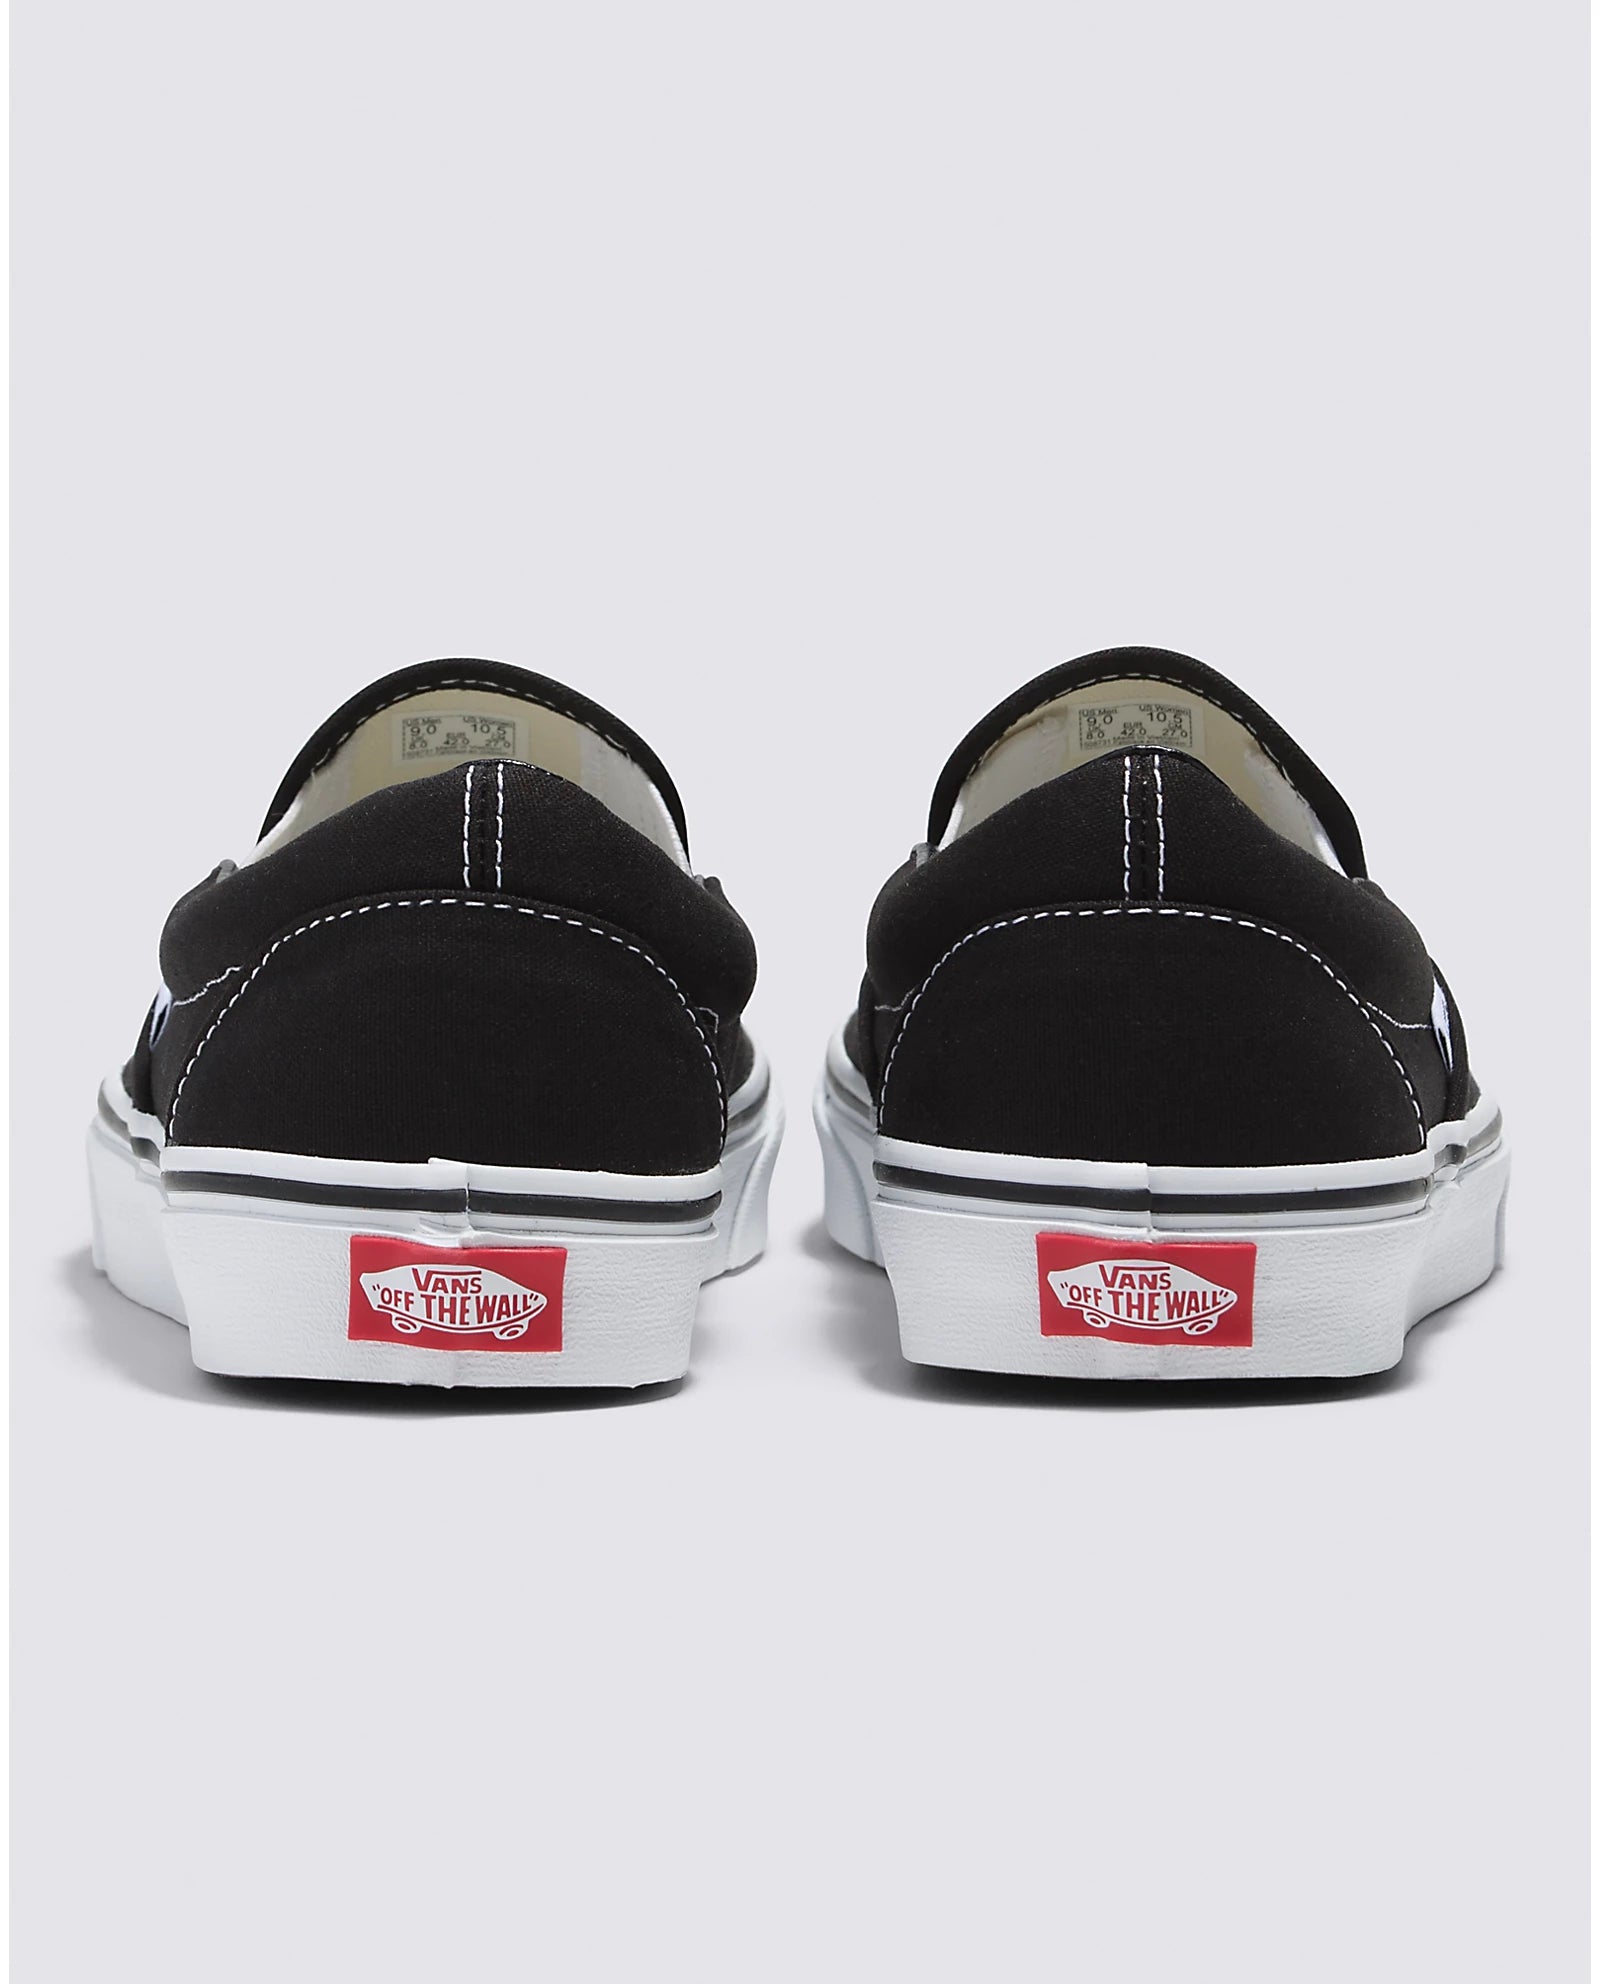 Vans Classic Slip-On Shoe Black White